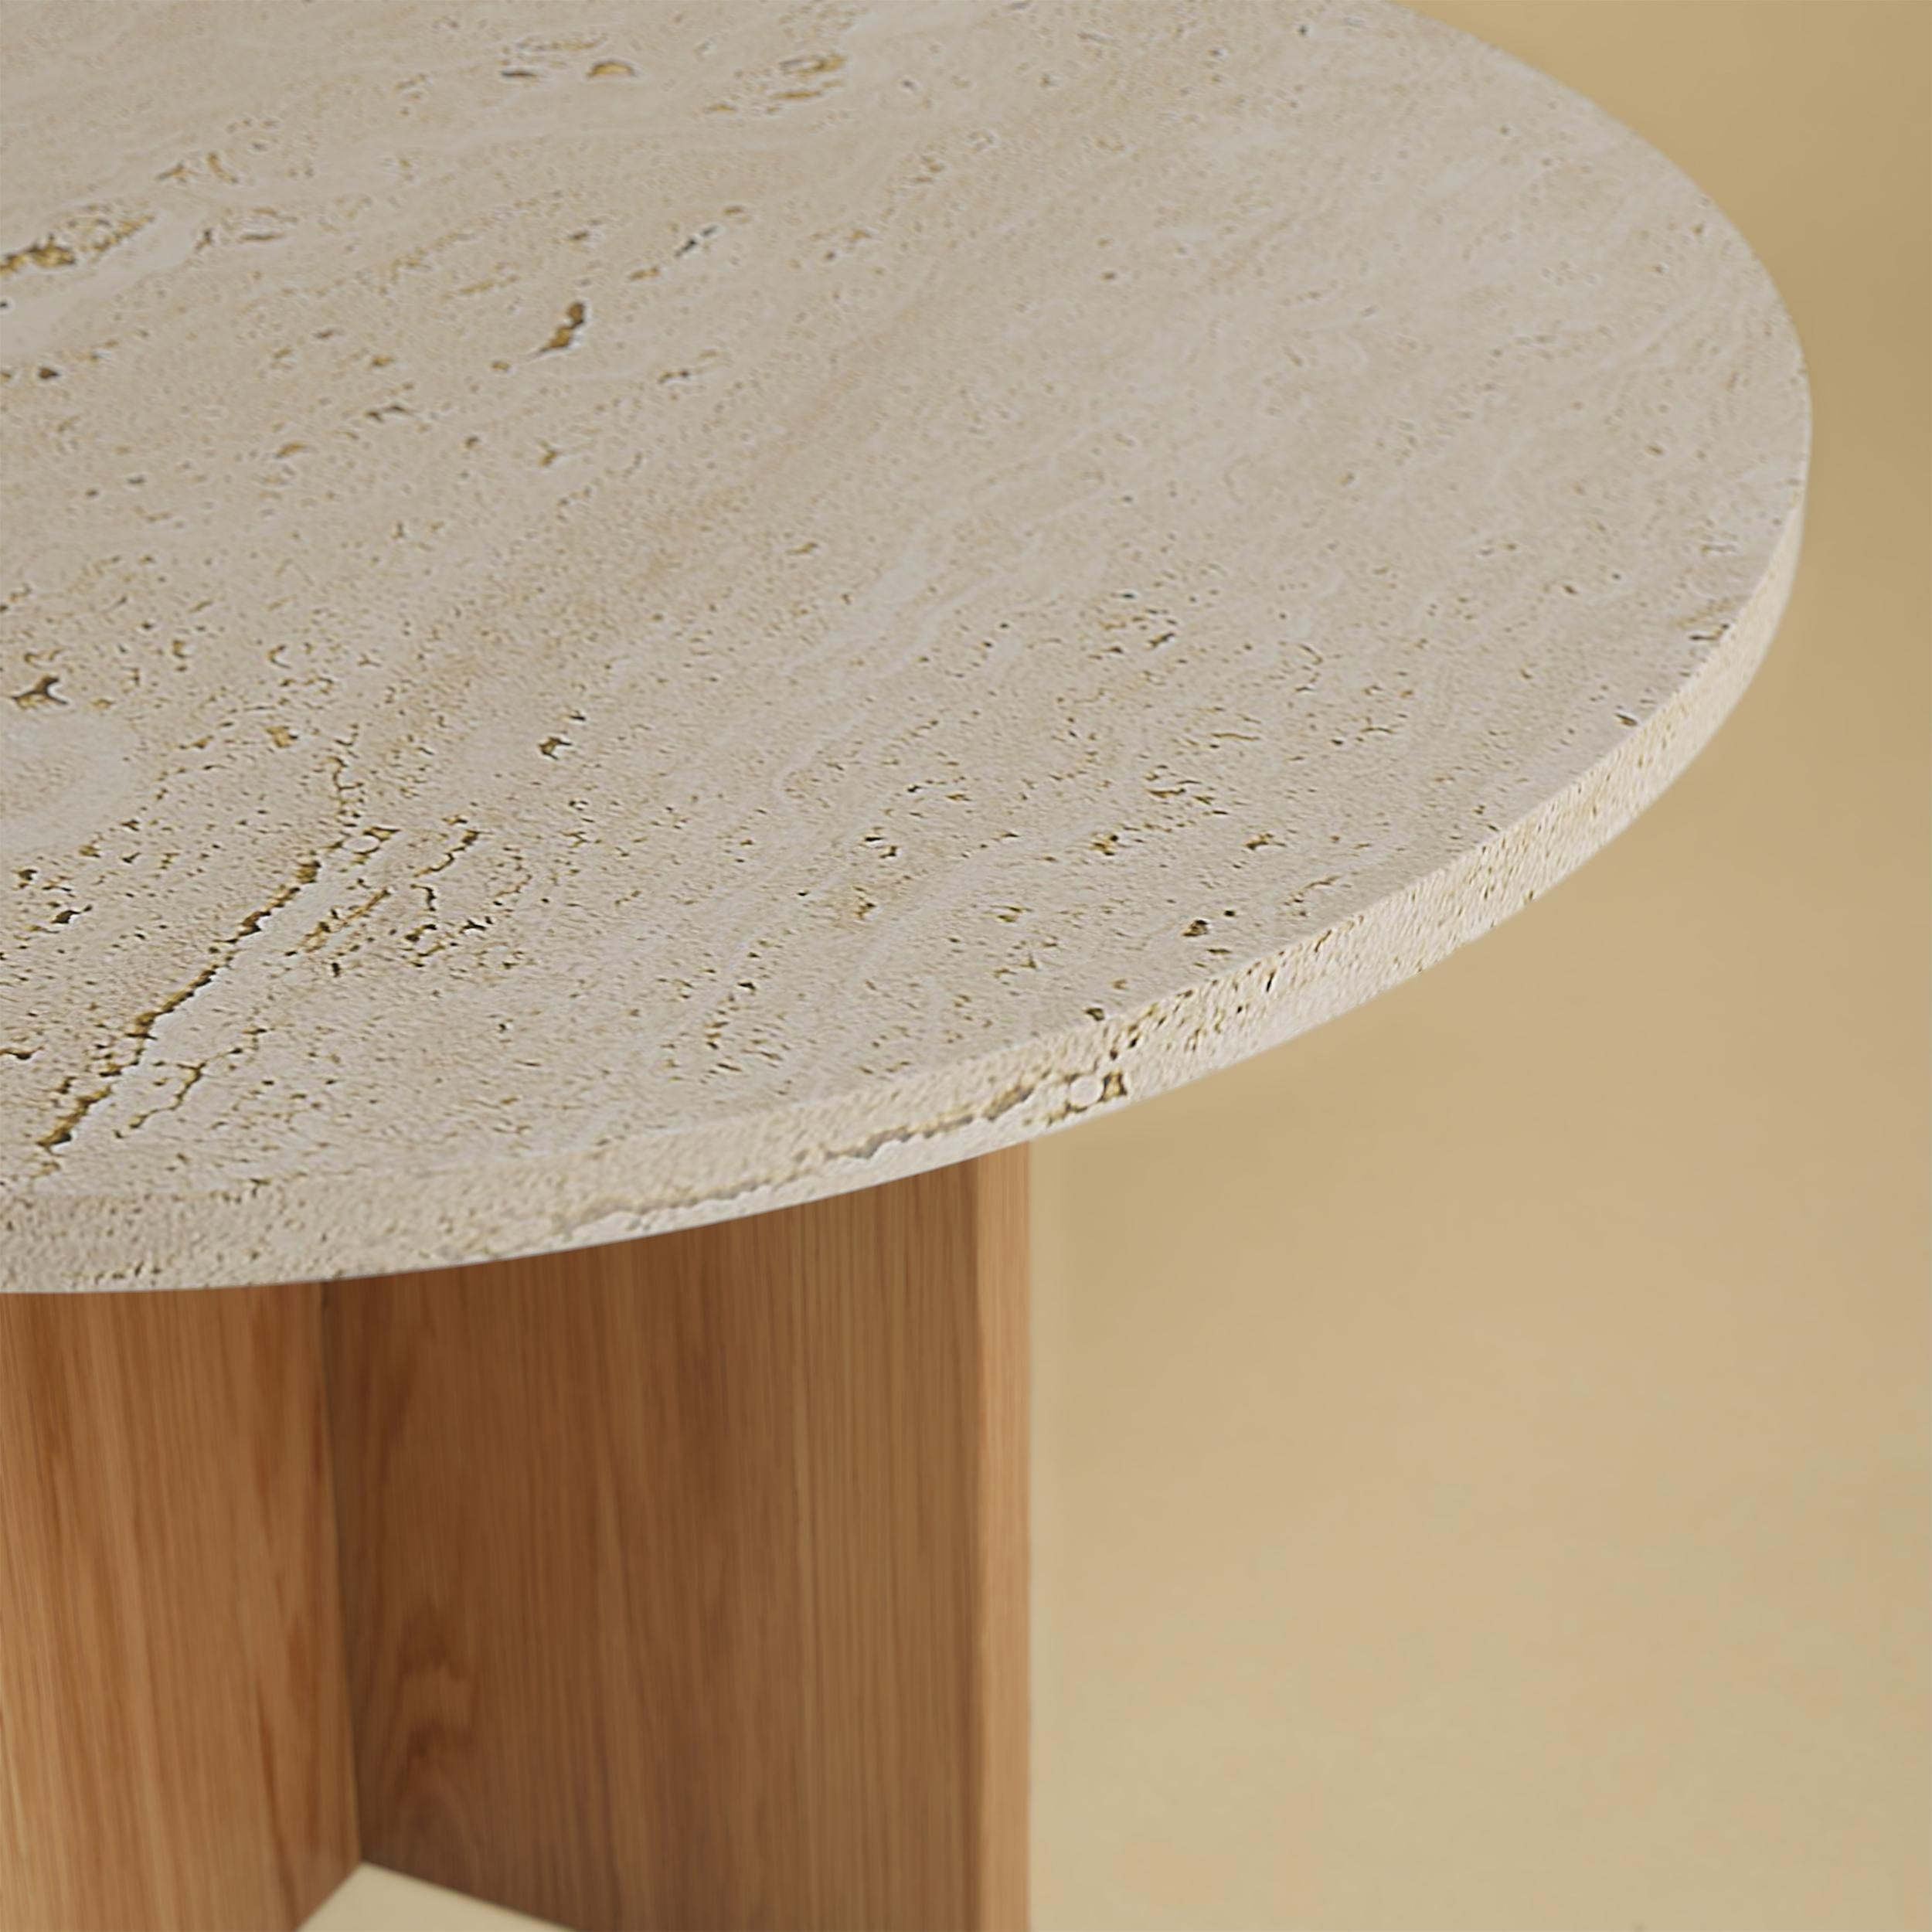 Der Couchtisch Tinian wird mit einem Untergestell aus Eichenholz und einer Platte aus römischem Travertin hergestellt. Die Platte ist kreisförmig und hat einen Durchmesser von 60 cm, während der Sockel aus rechtwinklig zueinander verleimten